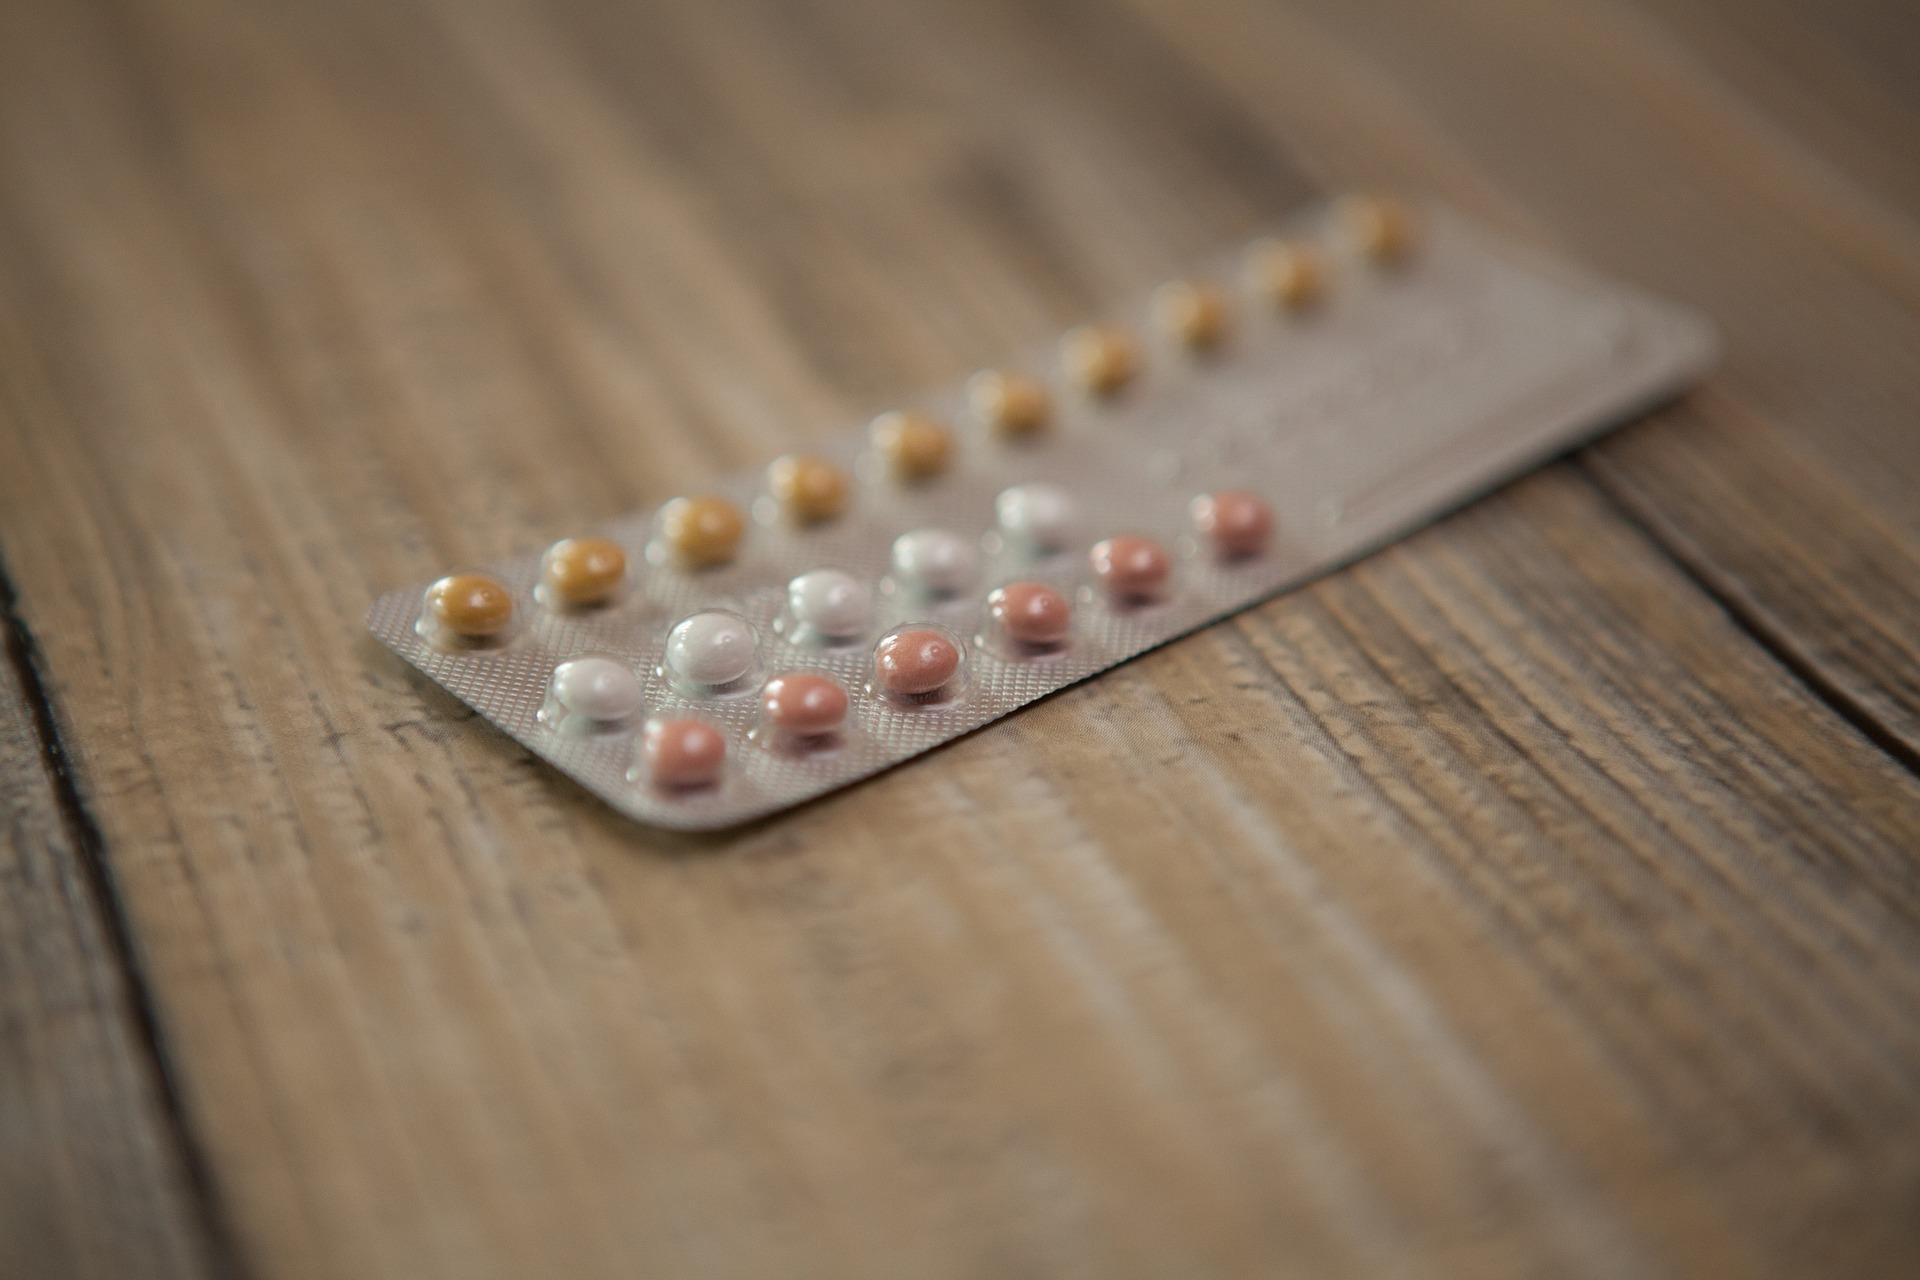 Alguns especialistas podem receitar anticoncepcionais para regular o fluxo menstrual das pacientes (Fonte: Pixabay/GabiSanda)